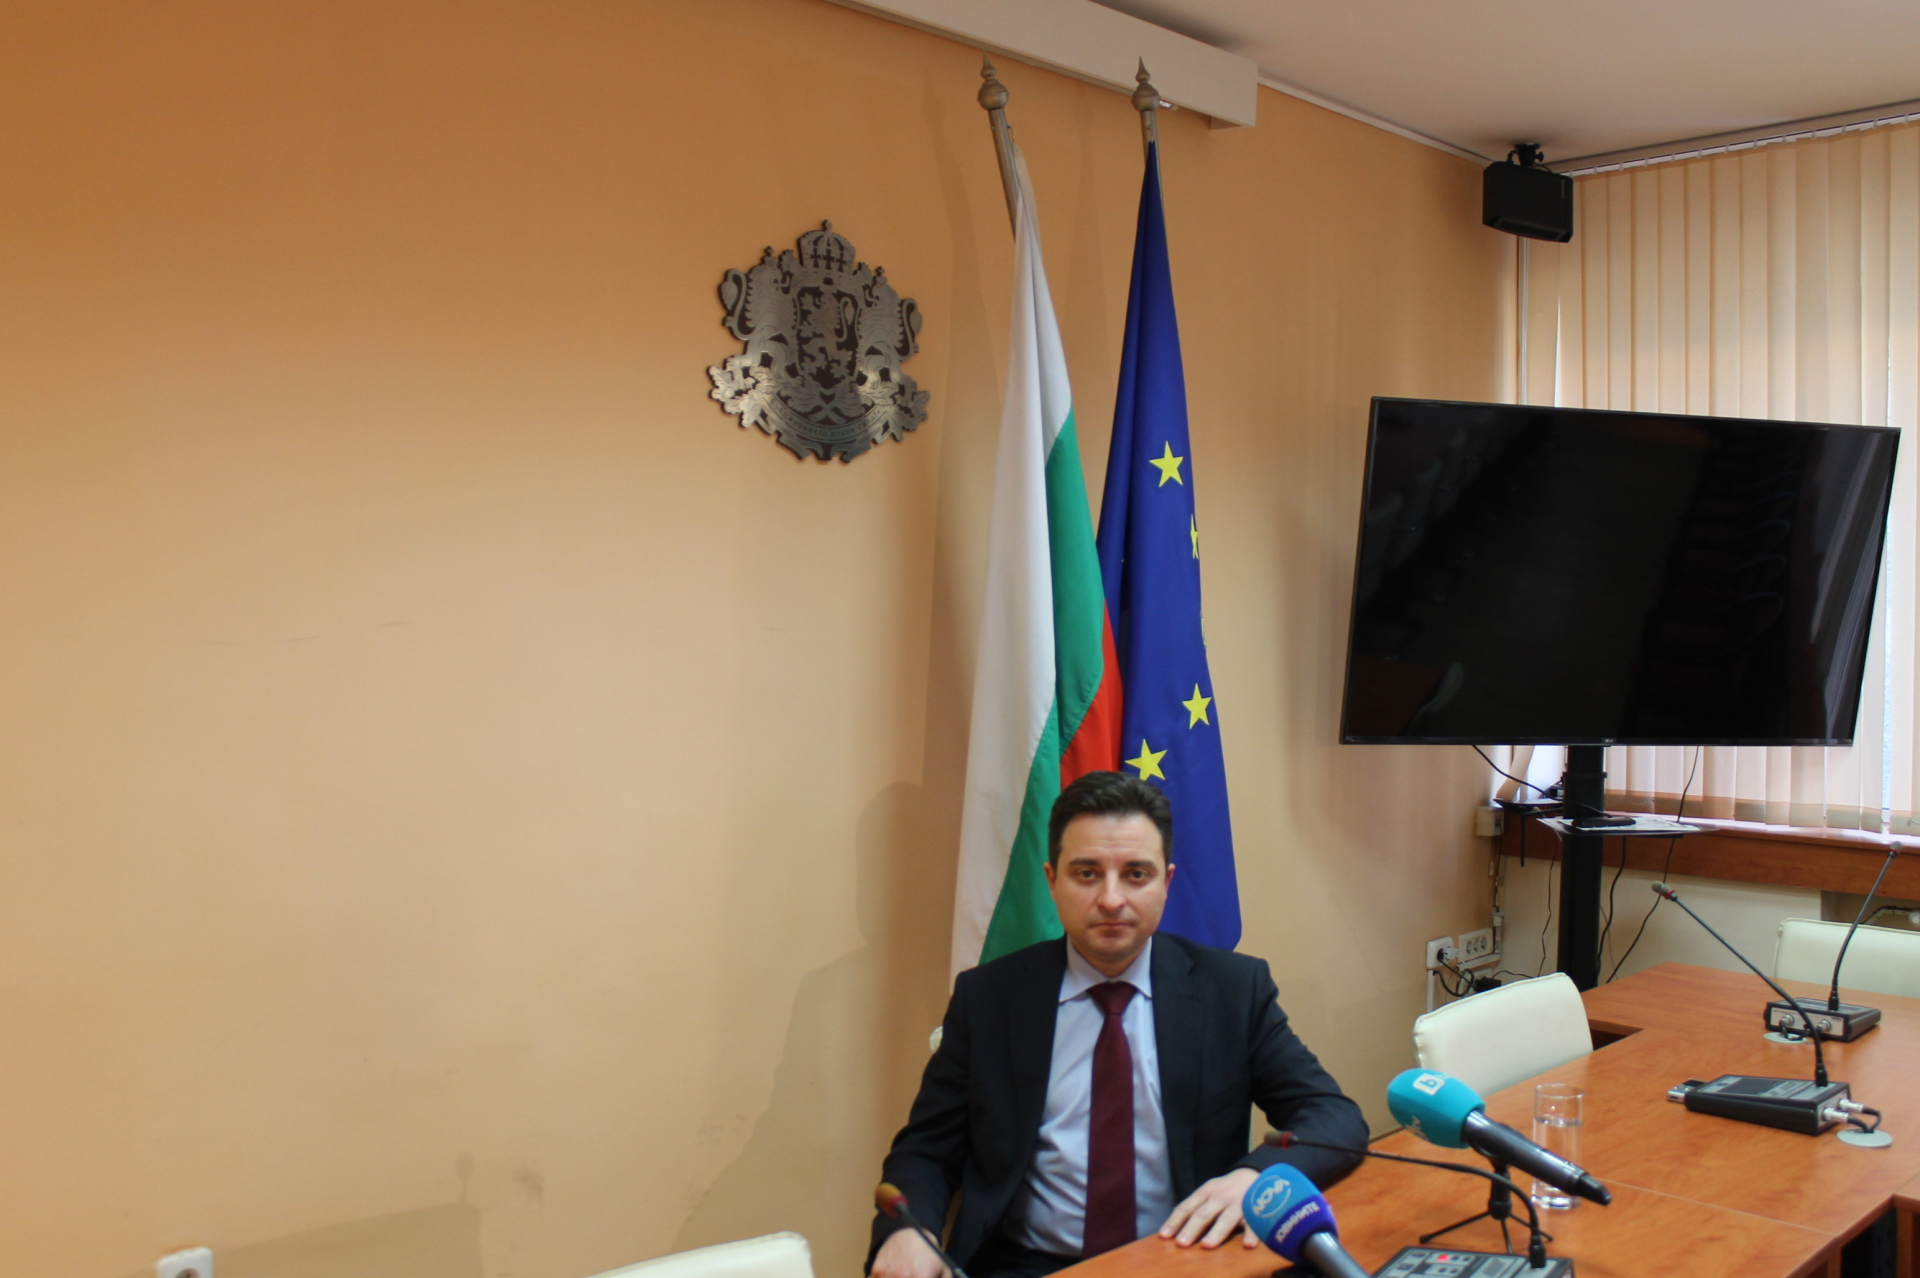 Димитър Данчев: Министерството на икономиката се пребори за безвъзмездна финансова помощ в полза на малките и средните предприятия